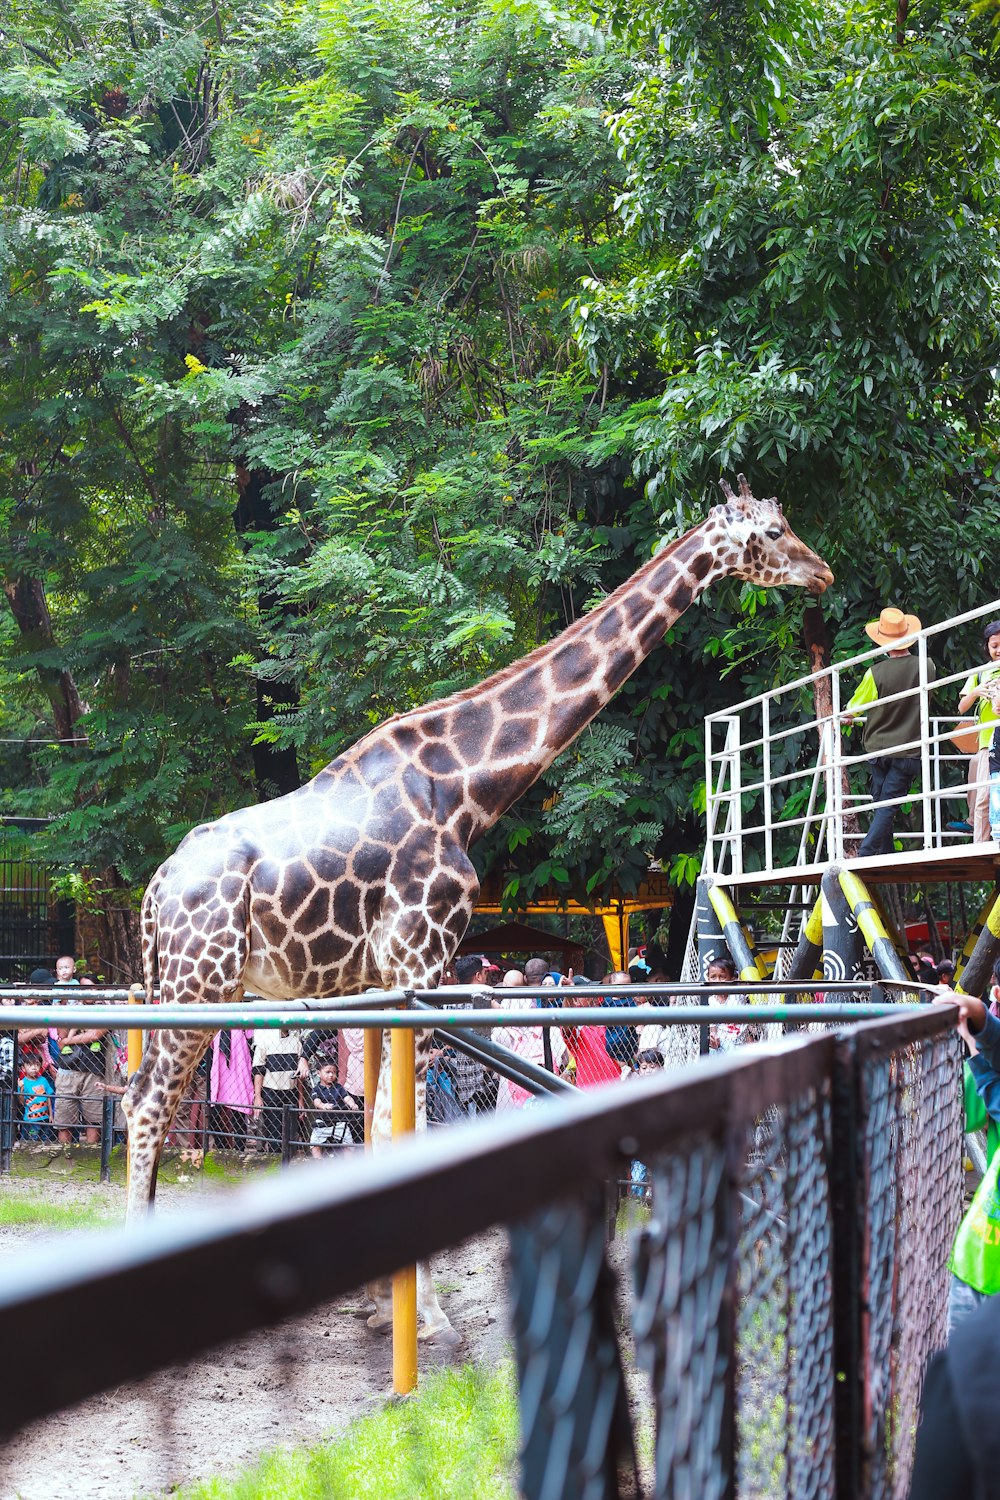 a giraffe standing next to a tall metal fence